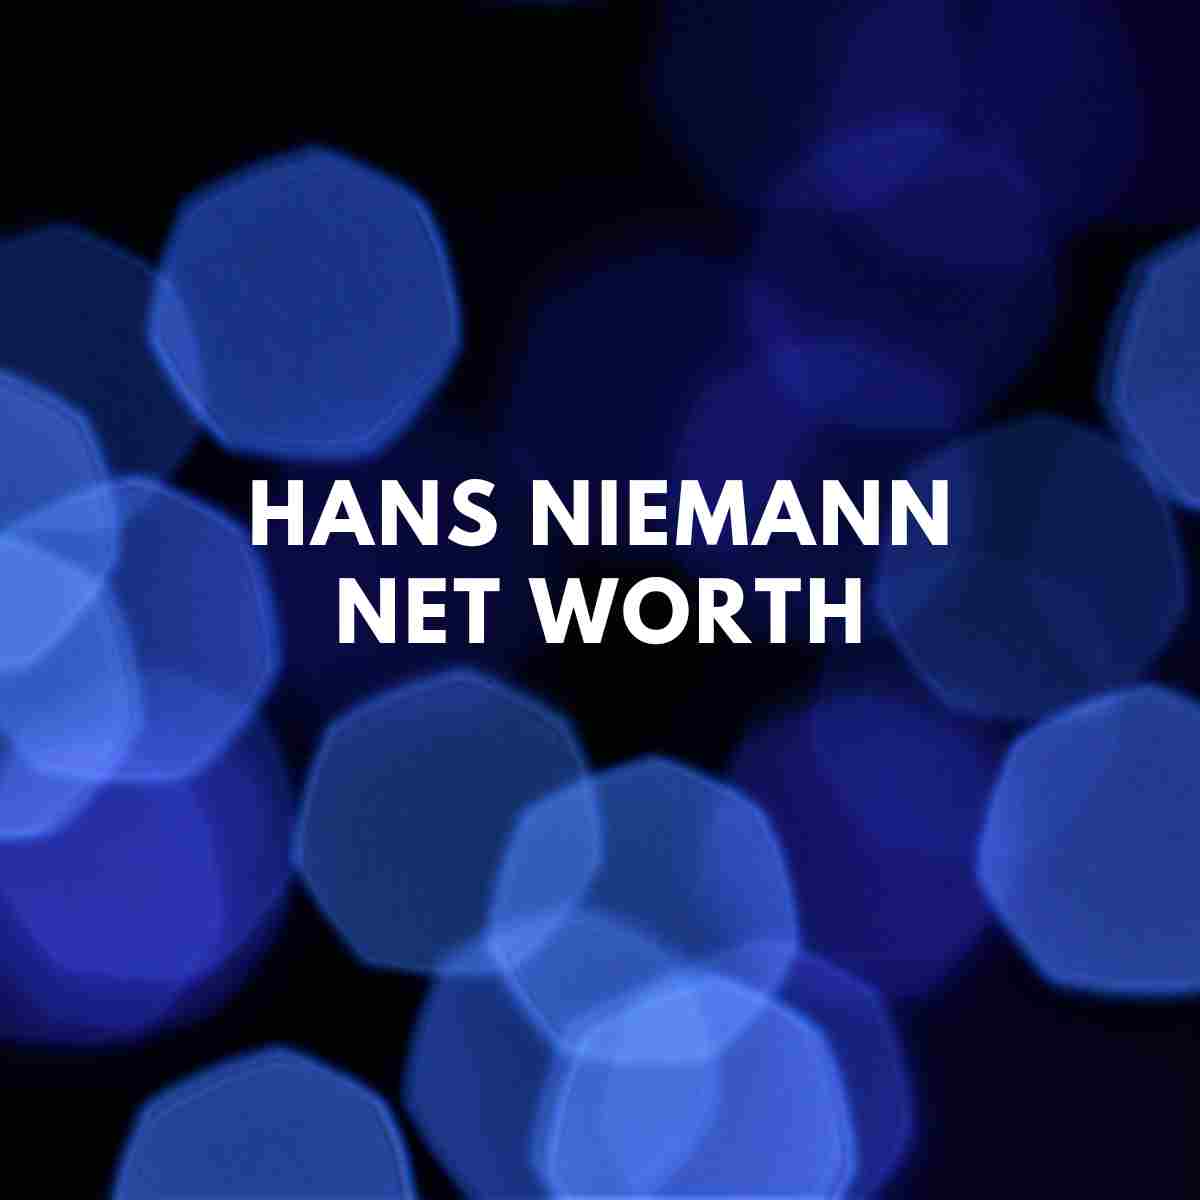 Hans Niemann Age: How Old Is Hans Niemann? - ABTC